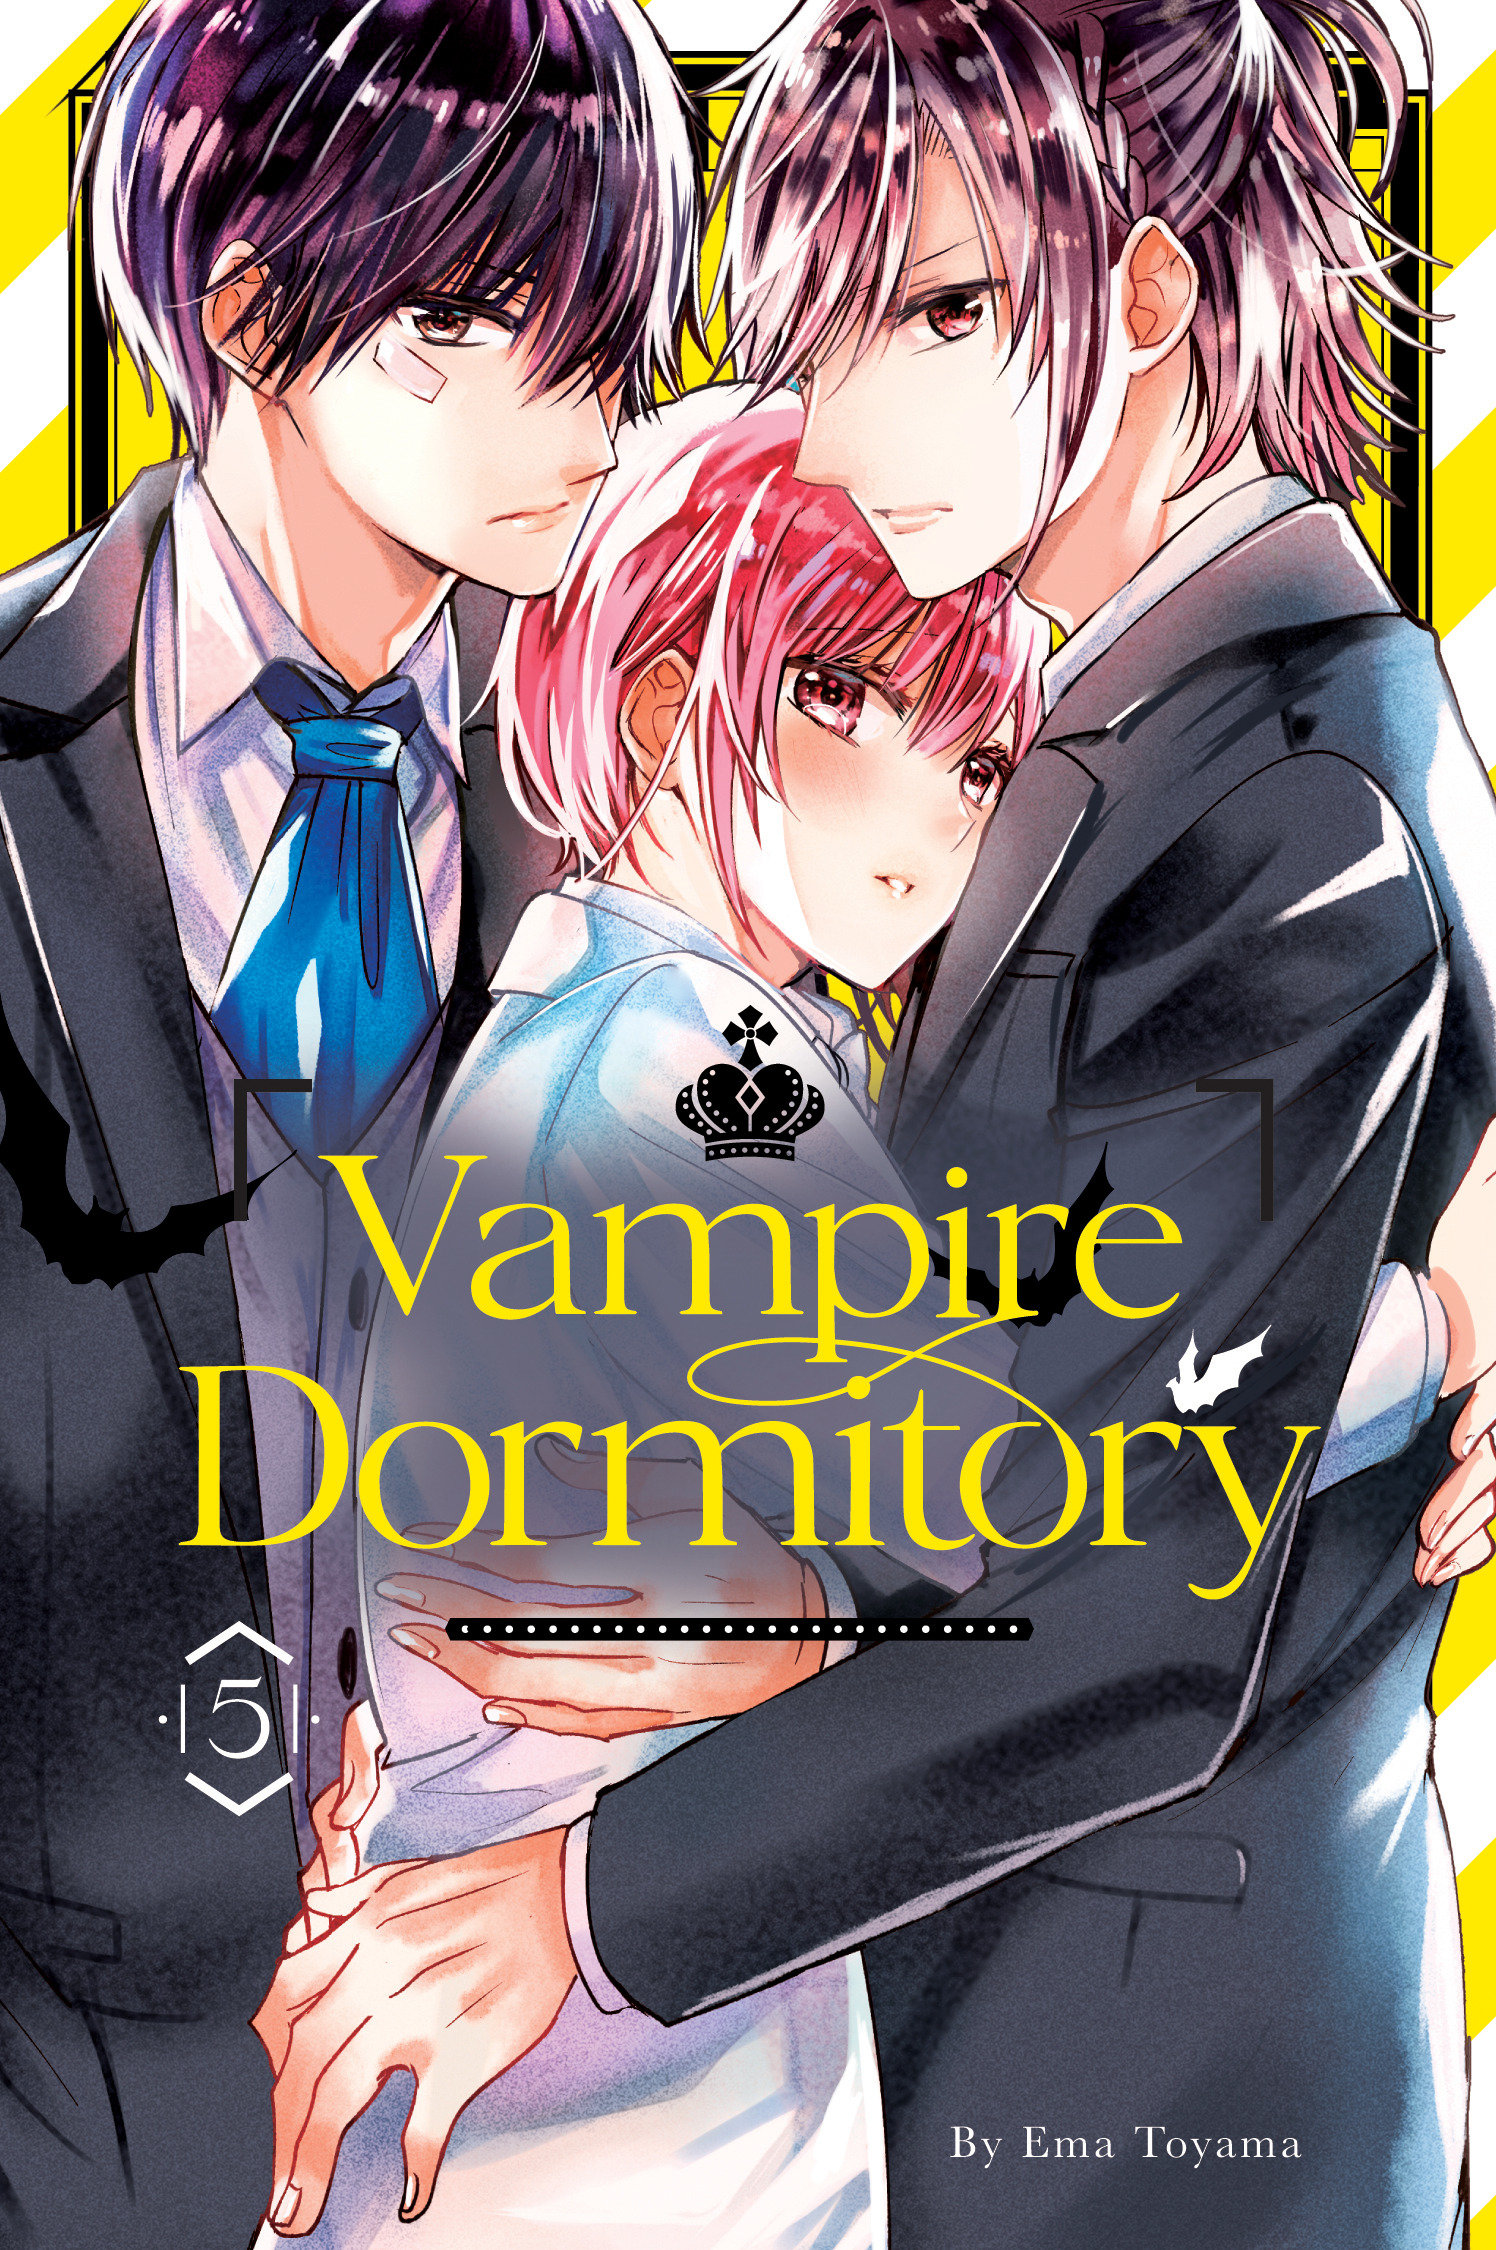 Vampire Dormitory Manga Volume 5